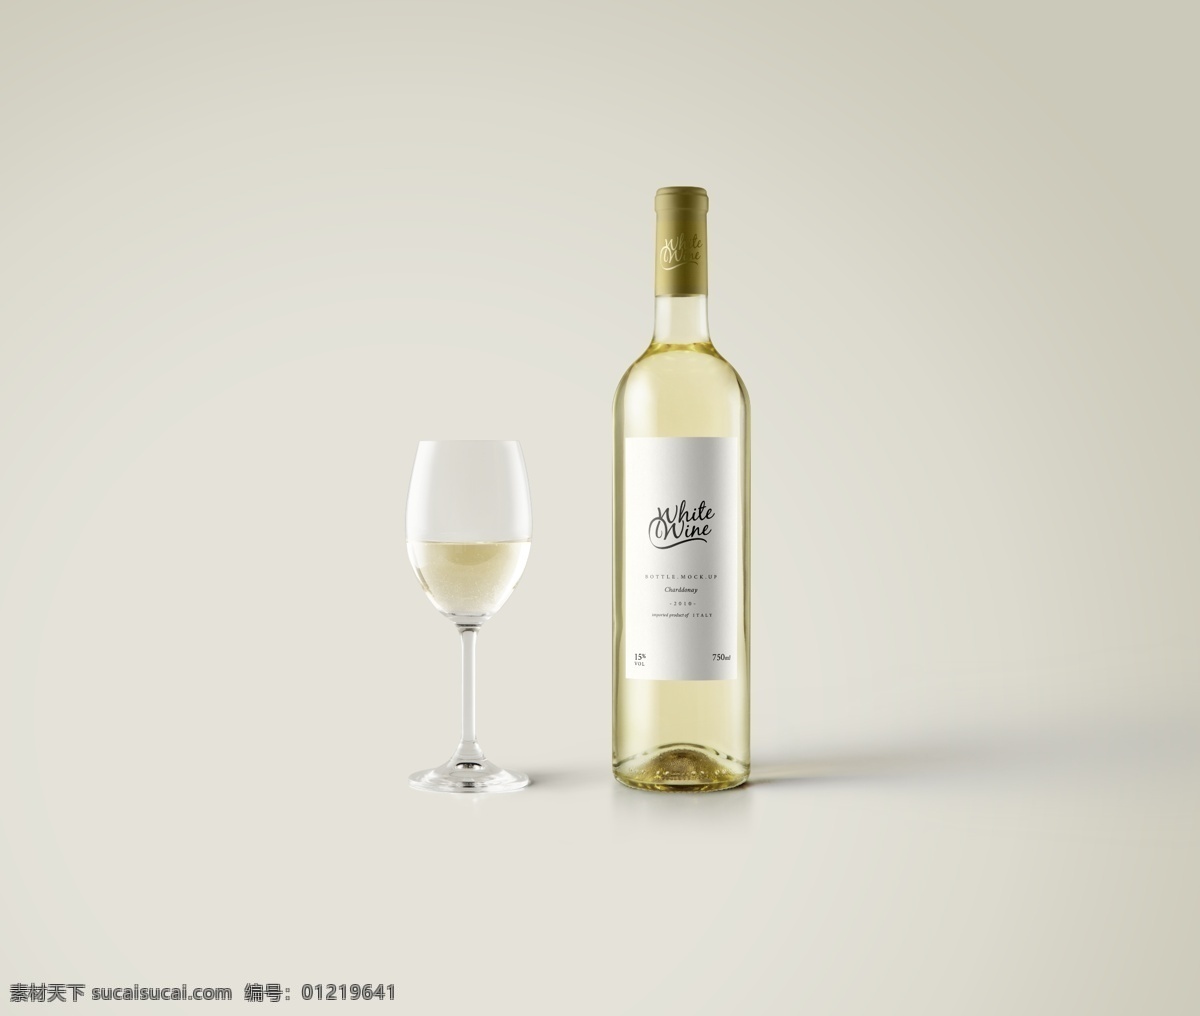 白葡萄酒 瓶 白葡萄酒瓶 样机 酒瓶样机 白葡萄样机 包装设计